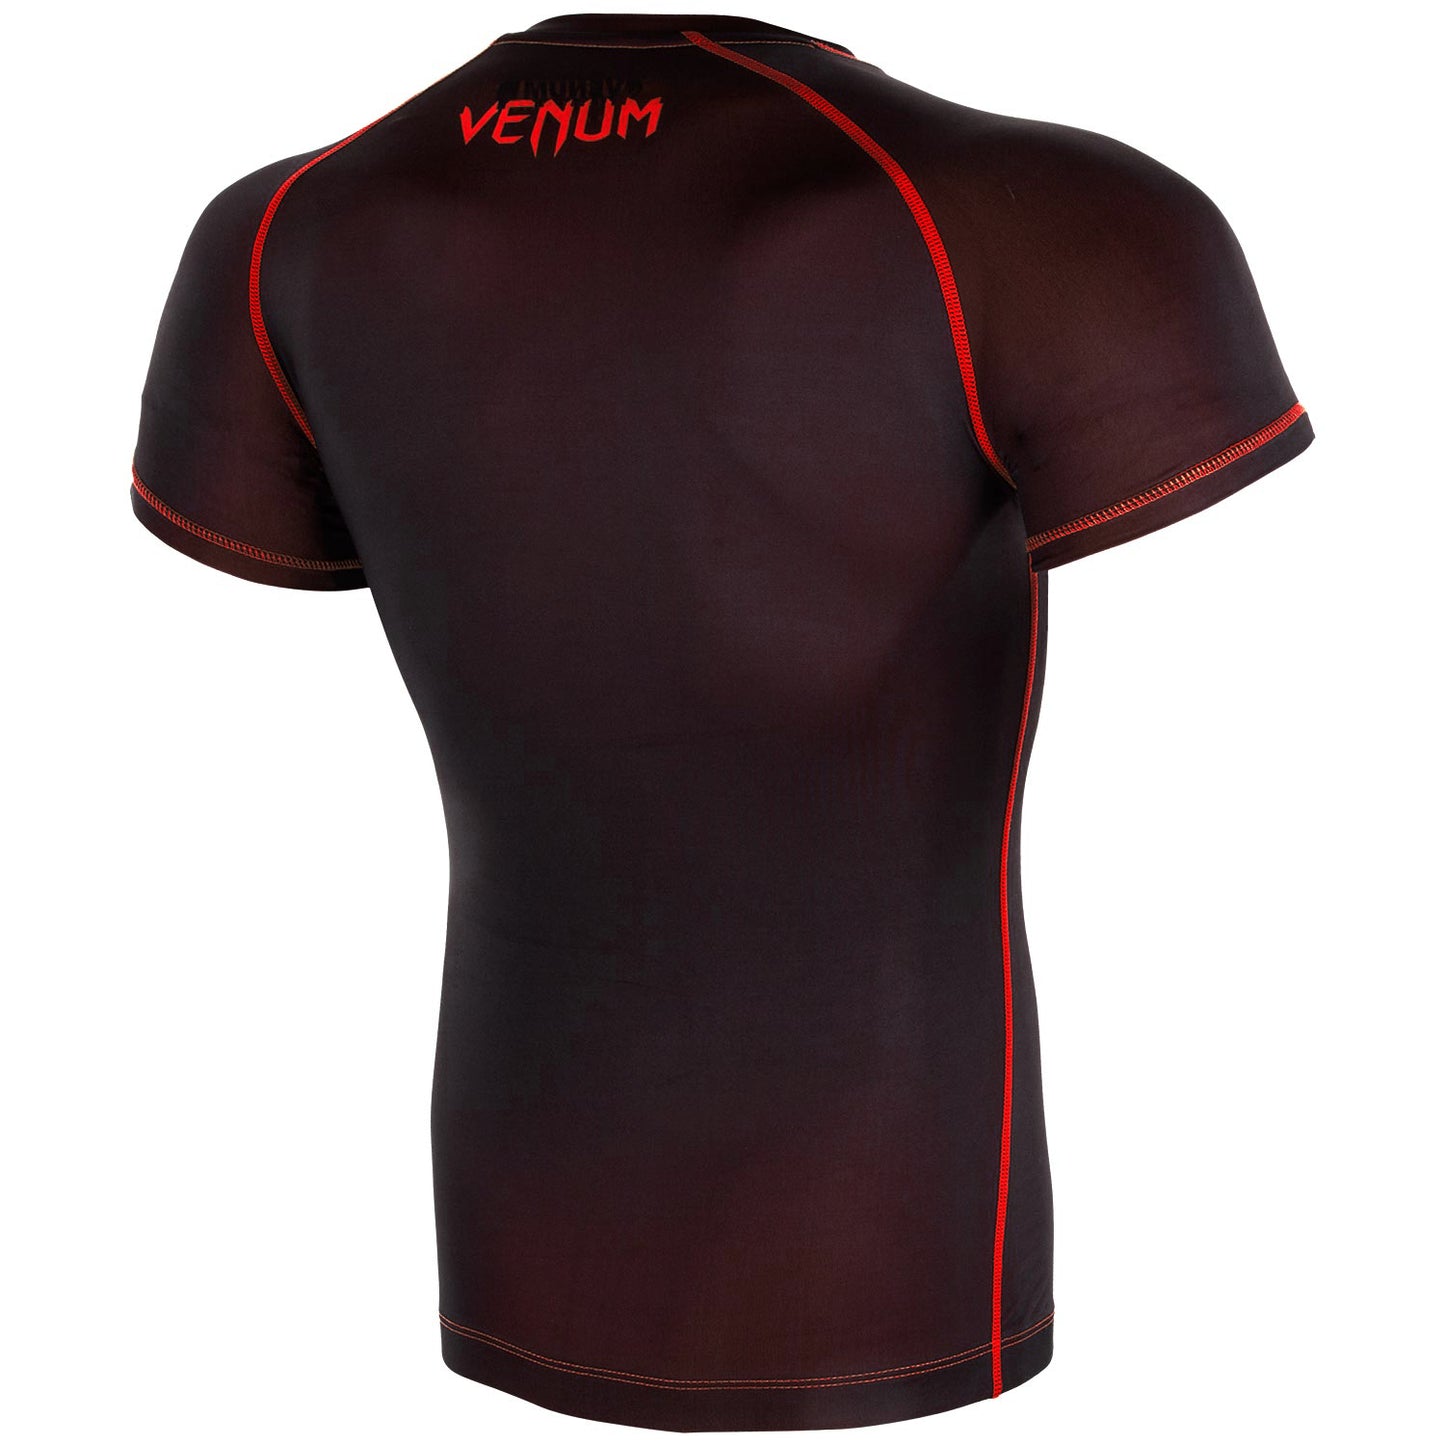 Camiseta de Compresión Venum Contender 3.0 - Mangas Cortas - Negro/Rojo